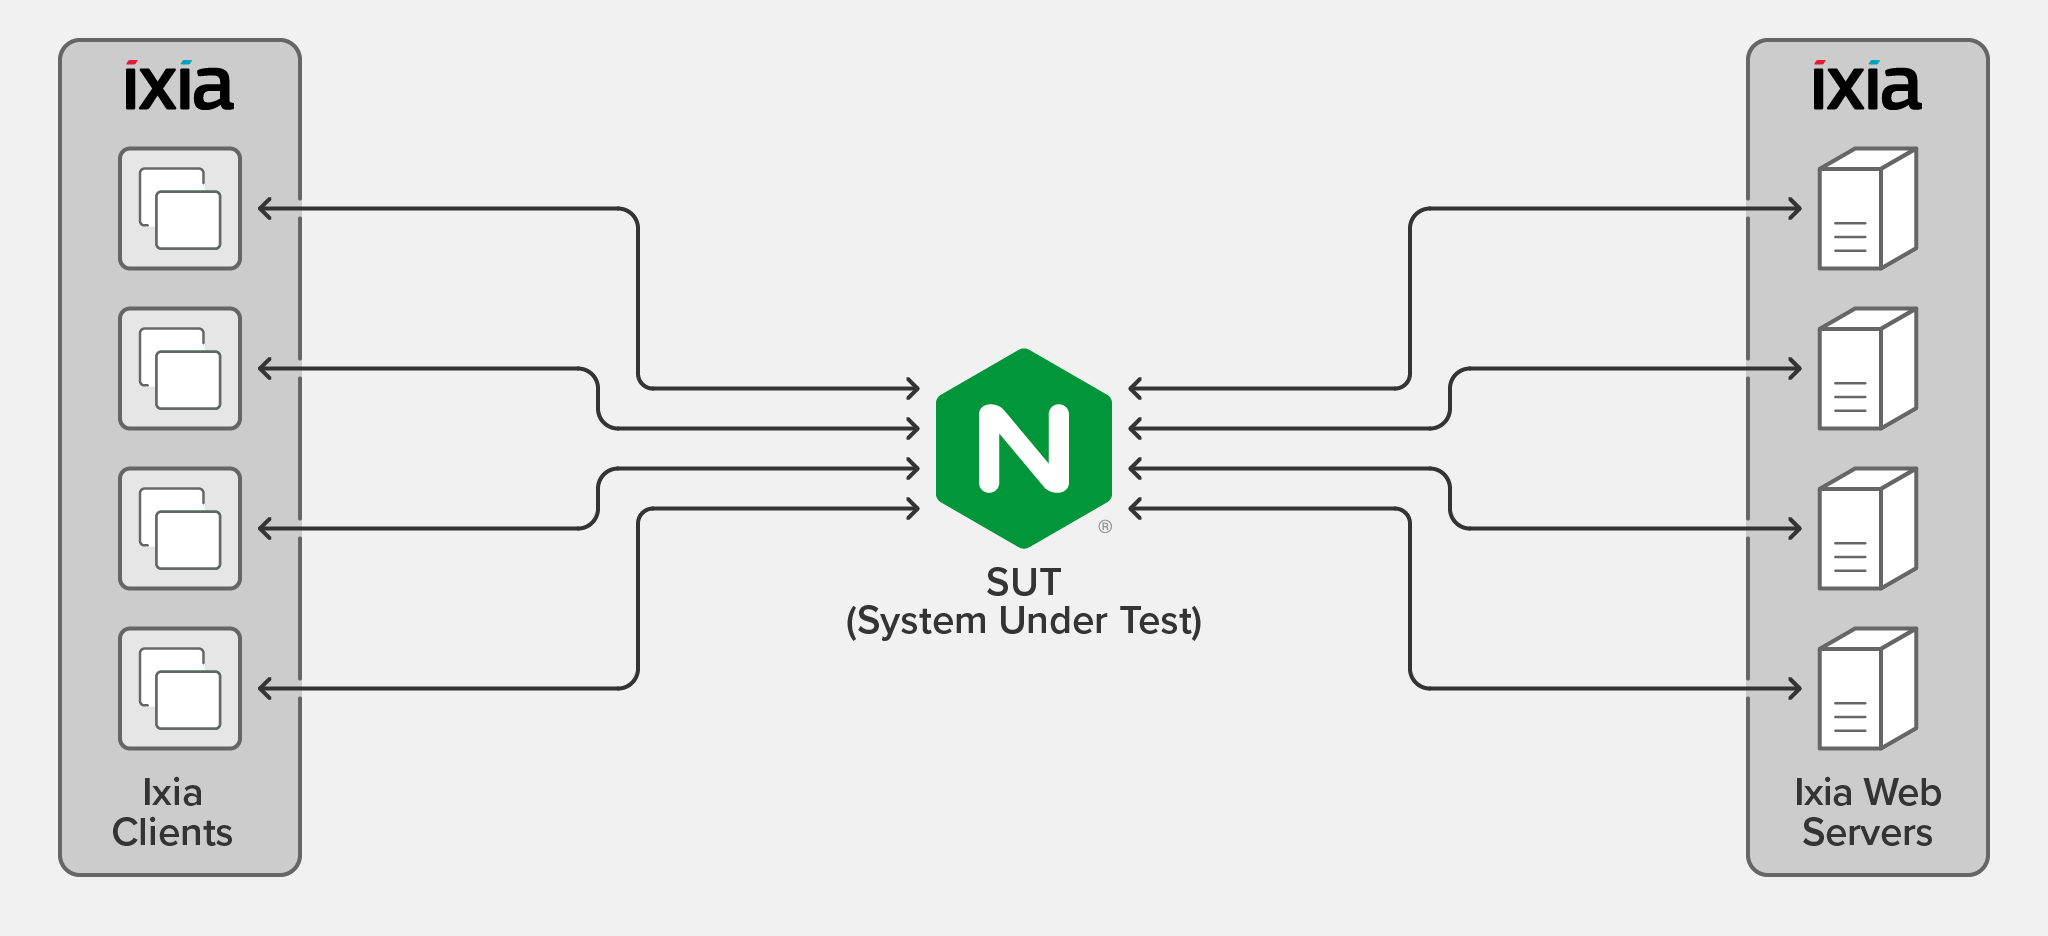 Topology for testing NGINX performance on bare metal